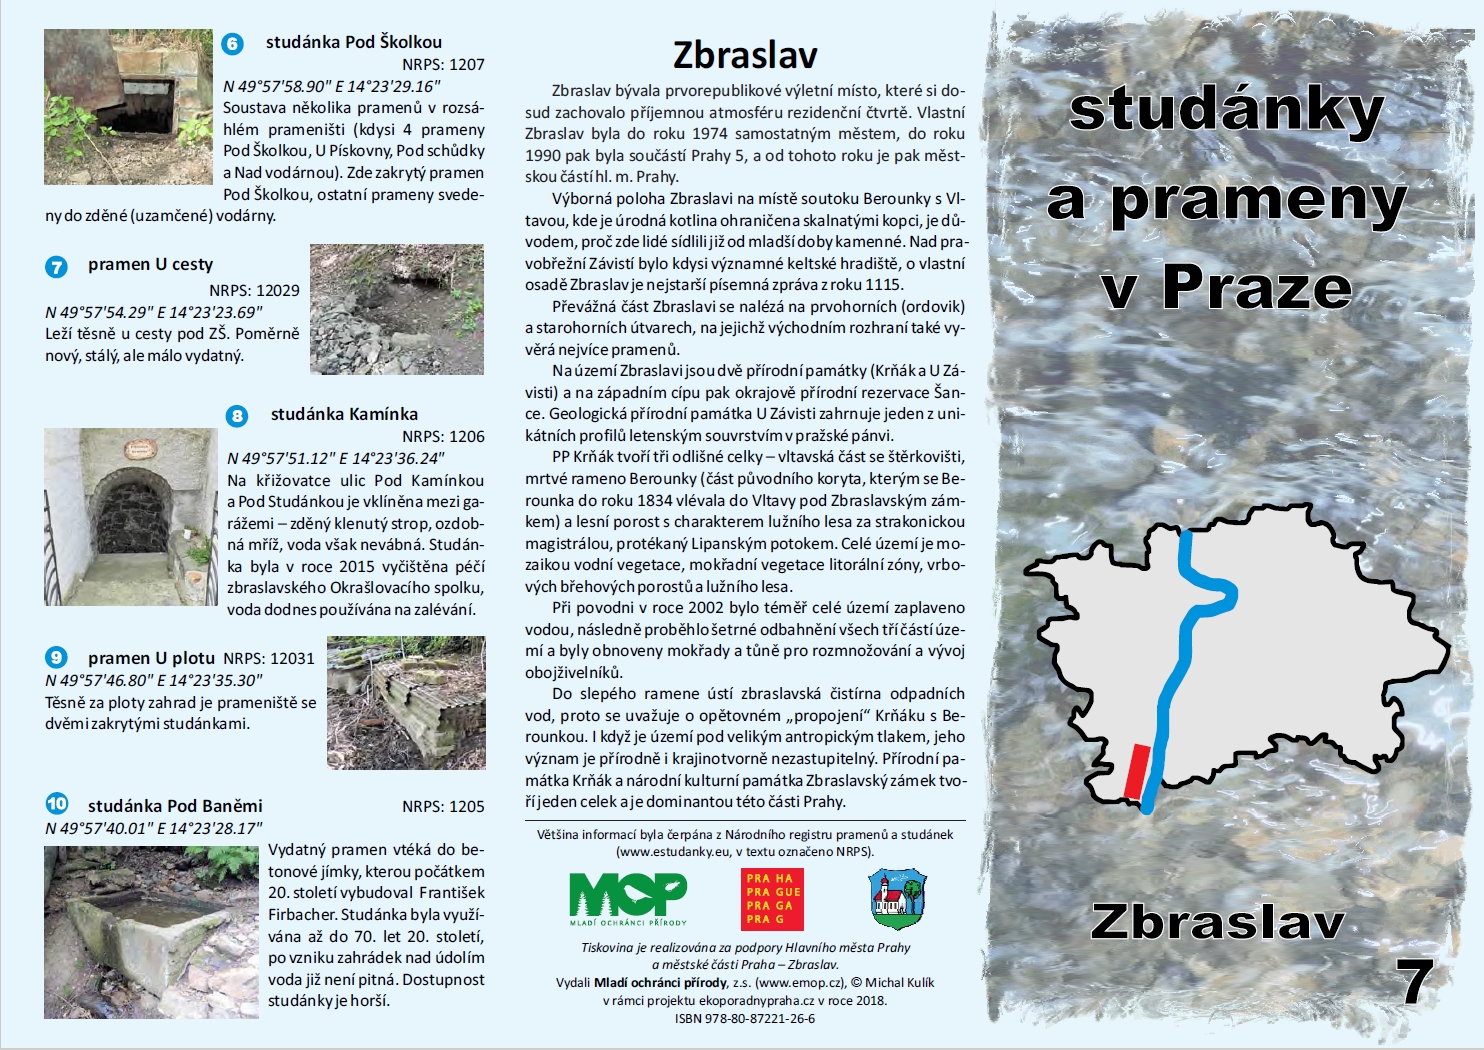 2768947_informační materiál Studánky a prameny v Praze, č.7 - Zbraslaví, ilustrační obr.